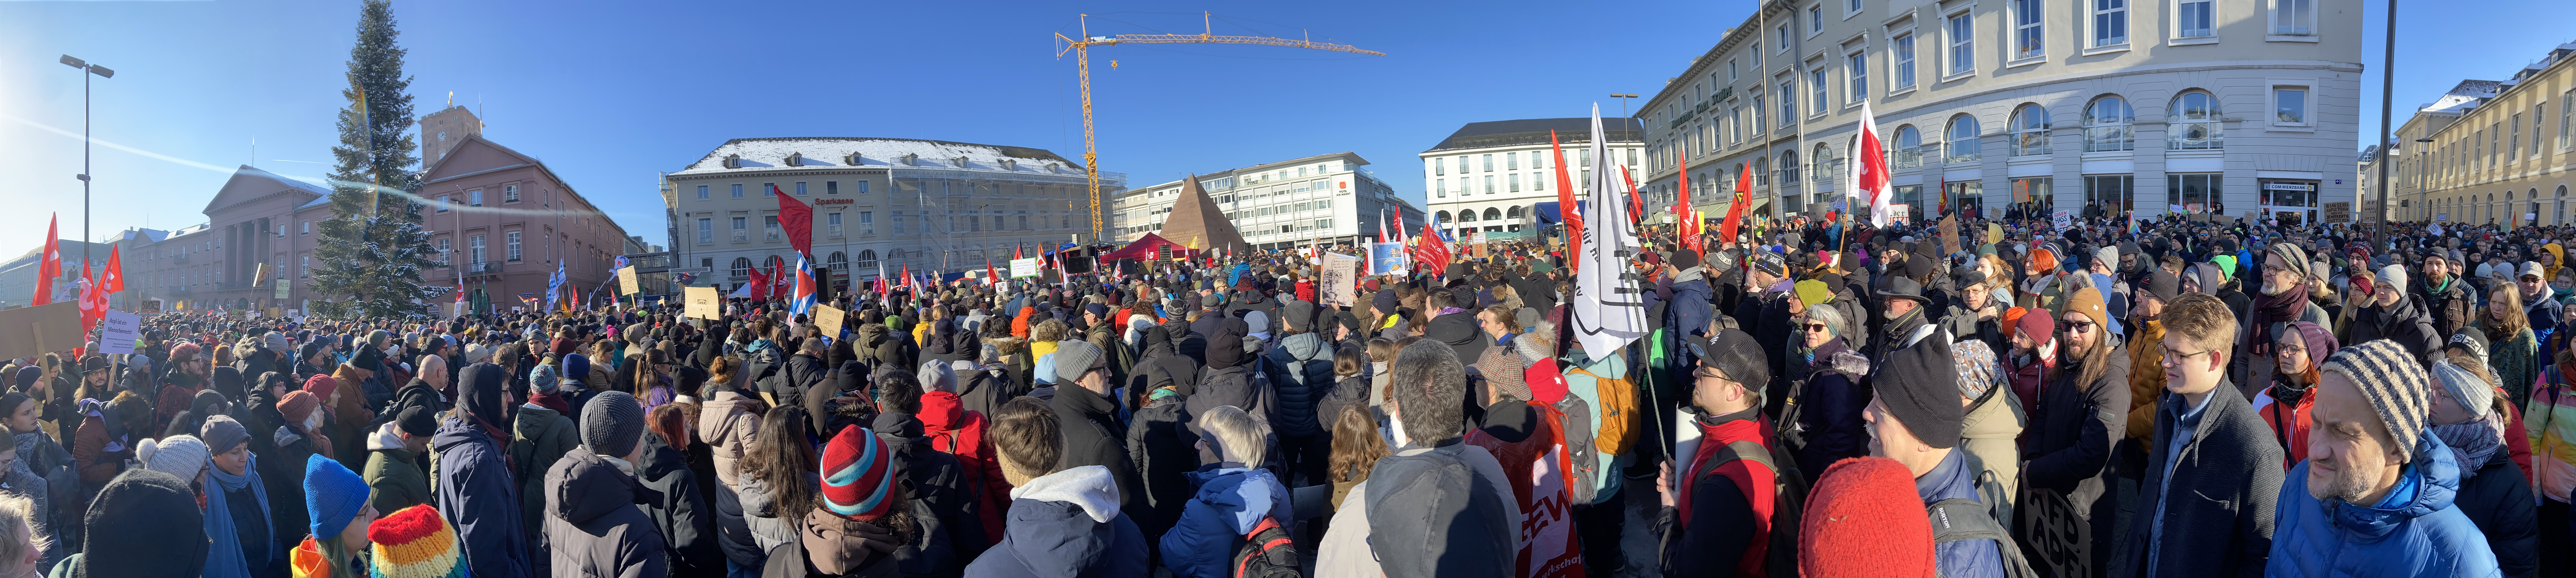 Demo in Karlsruhe